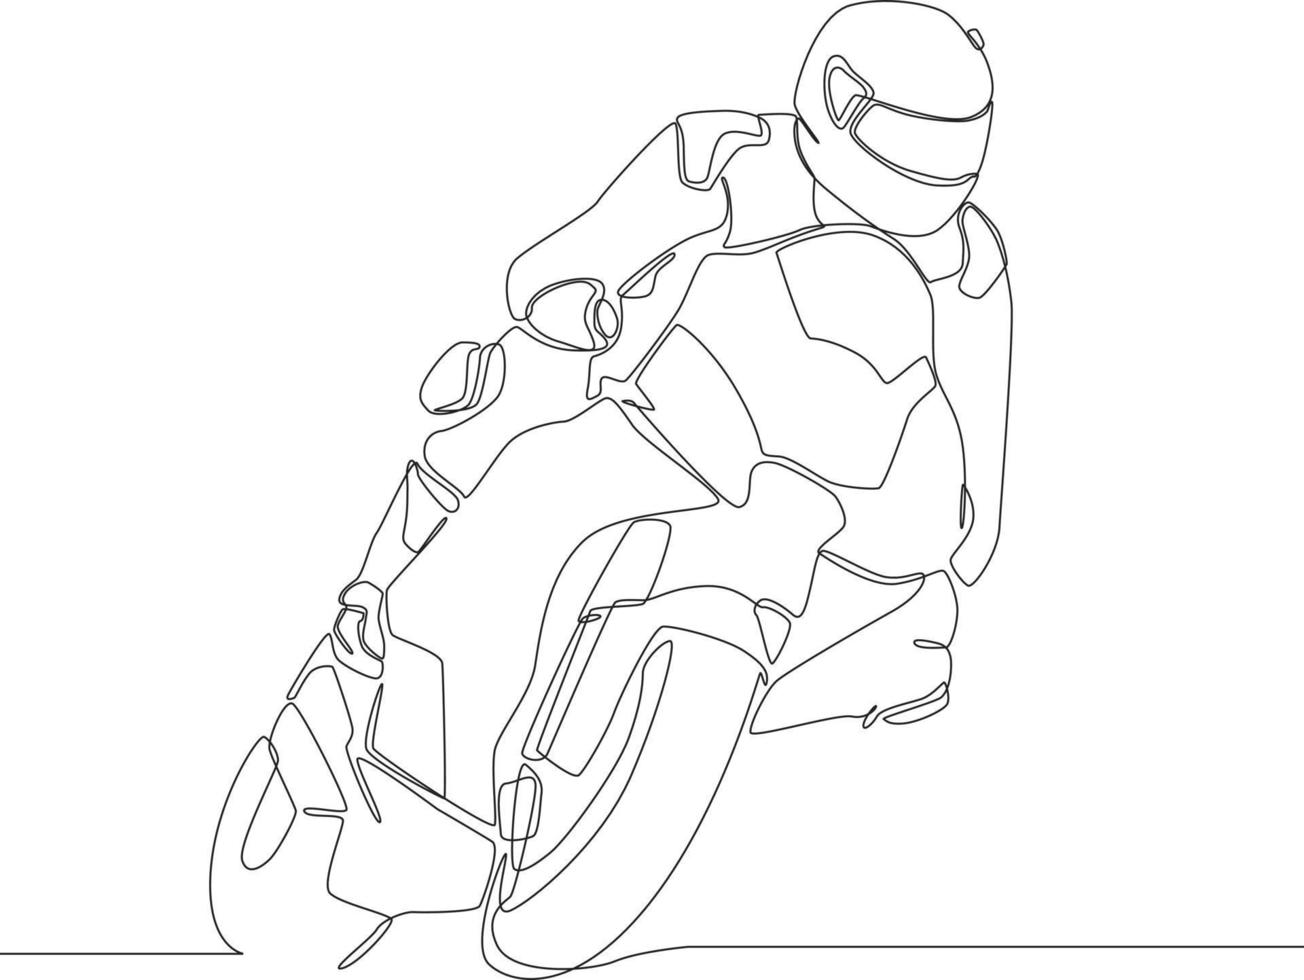 kontinuerlig en rad ritning motorcyklist rider motorcykel på vägen i vänster sväng stil. enda rad rita design vektorgrafisk illustration. vektor